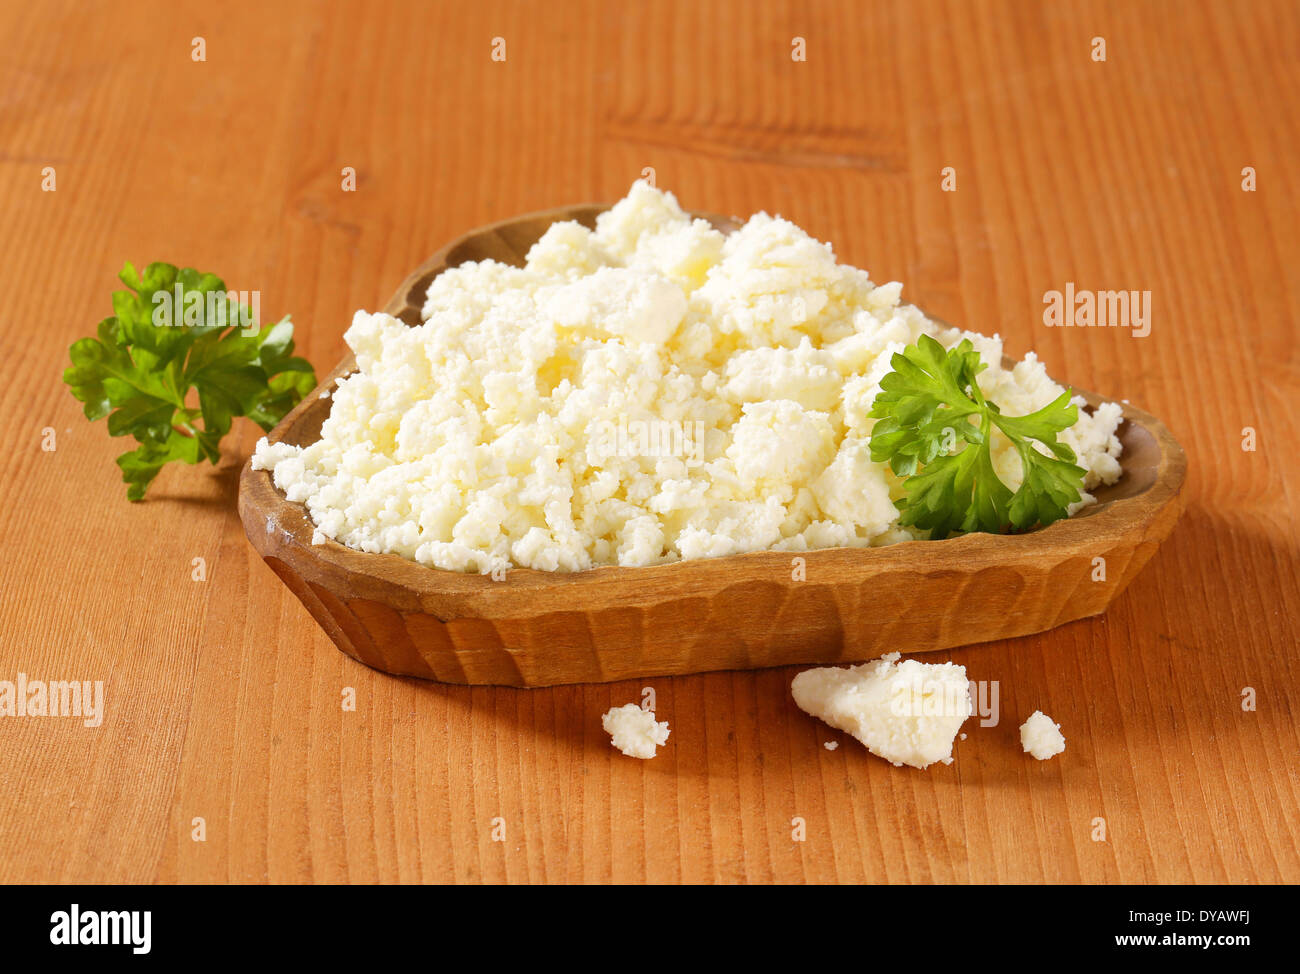 Bryndza - Slovak sheep's milk cheese Stock Photo